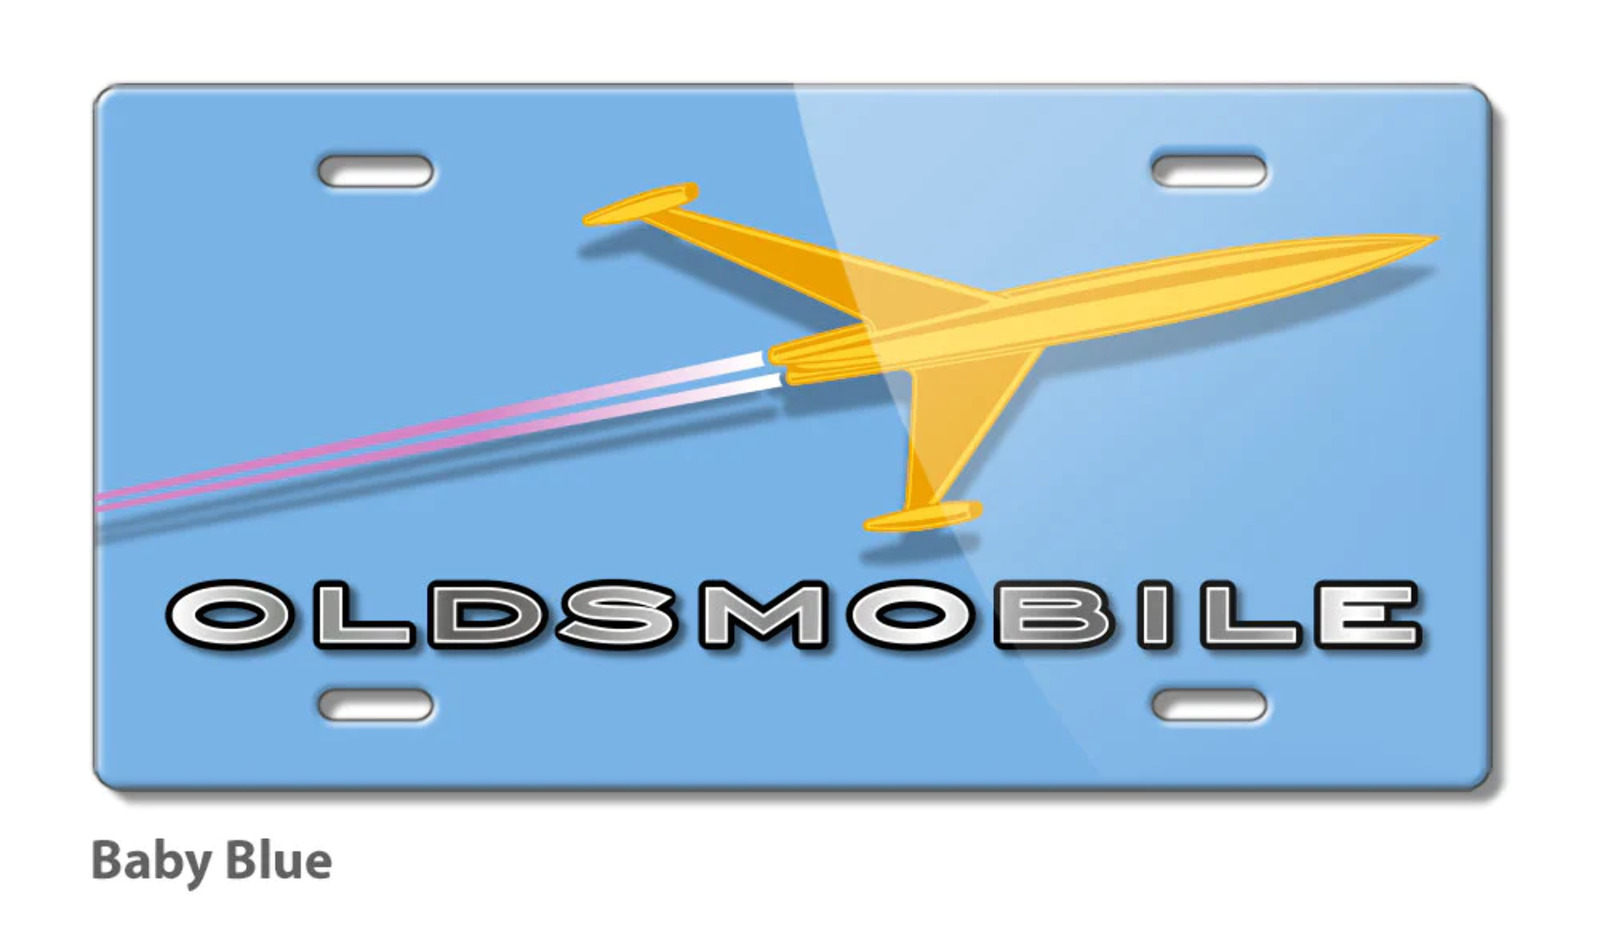 Oldsmobile Rocket Emblem 1956 Aluminum License Plate - 16 colors - Made in USA